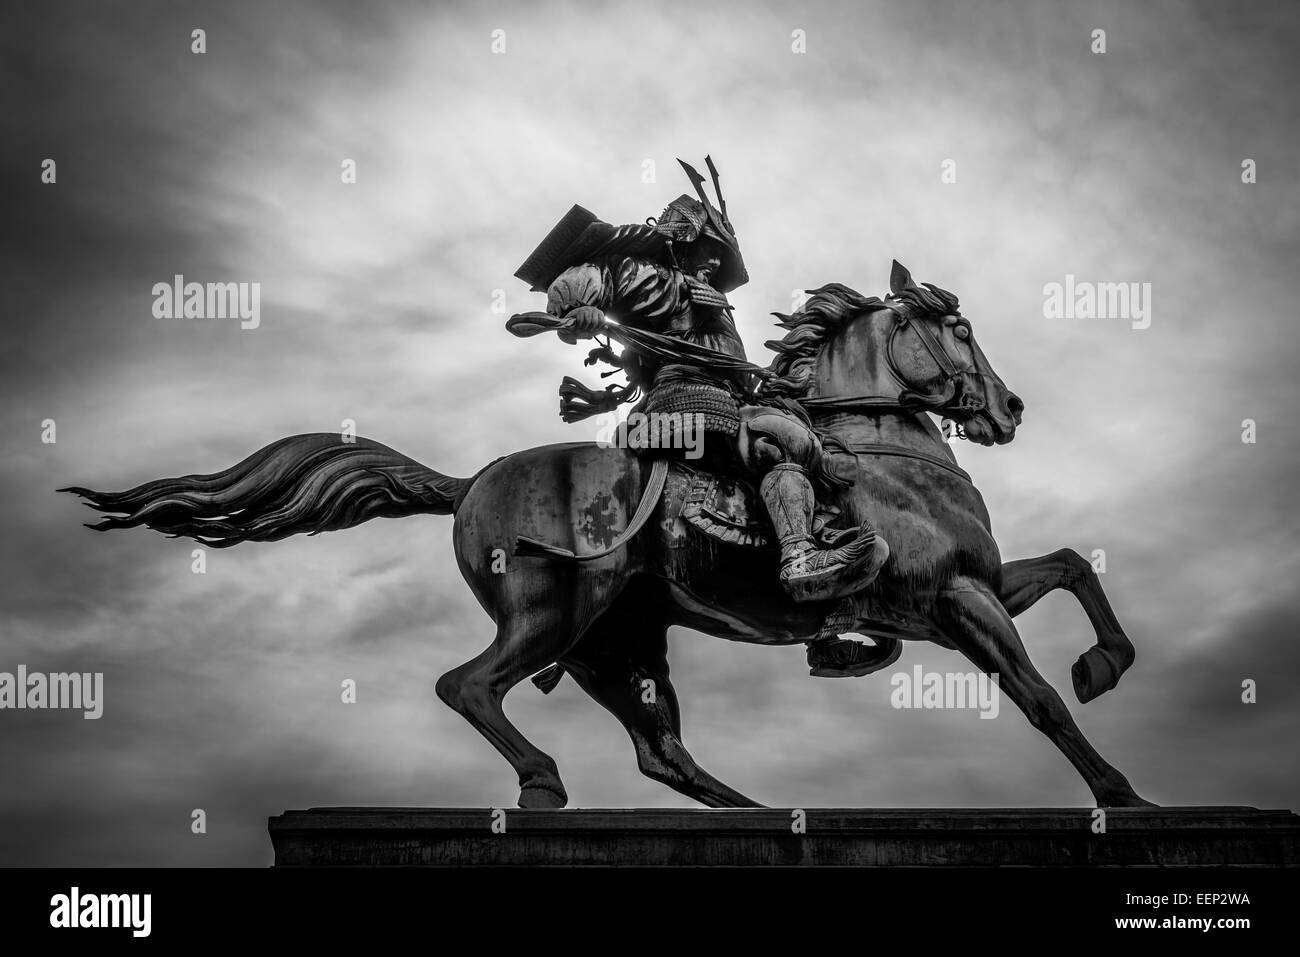 En blanco y negro de un samurai a caballo. Foto de stock